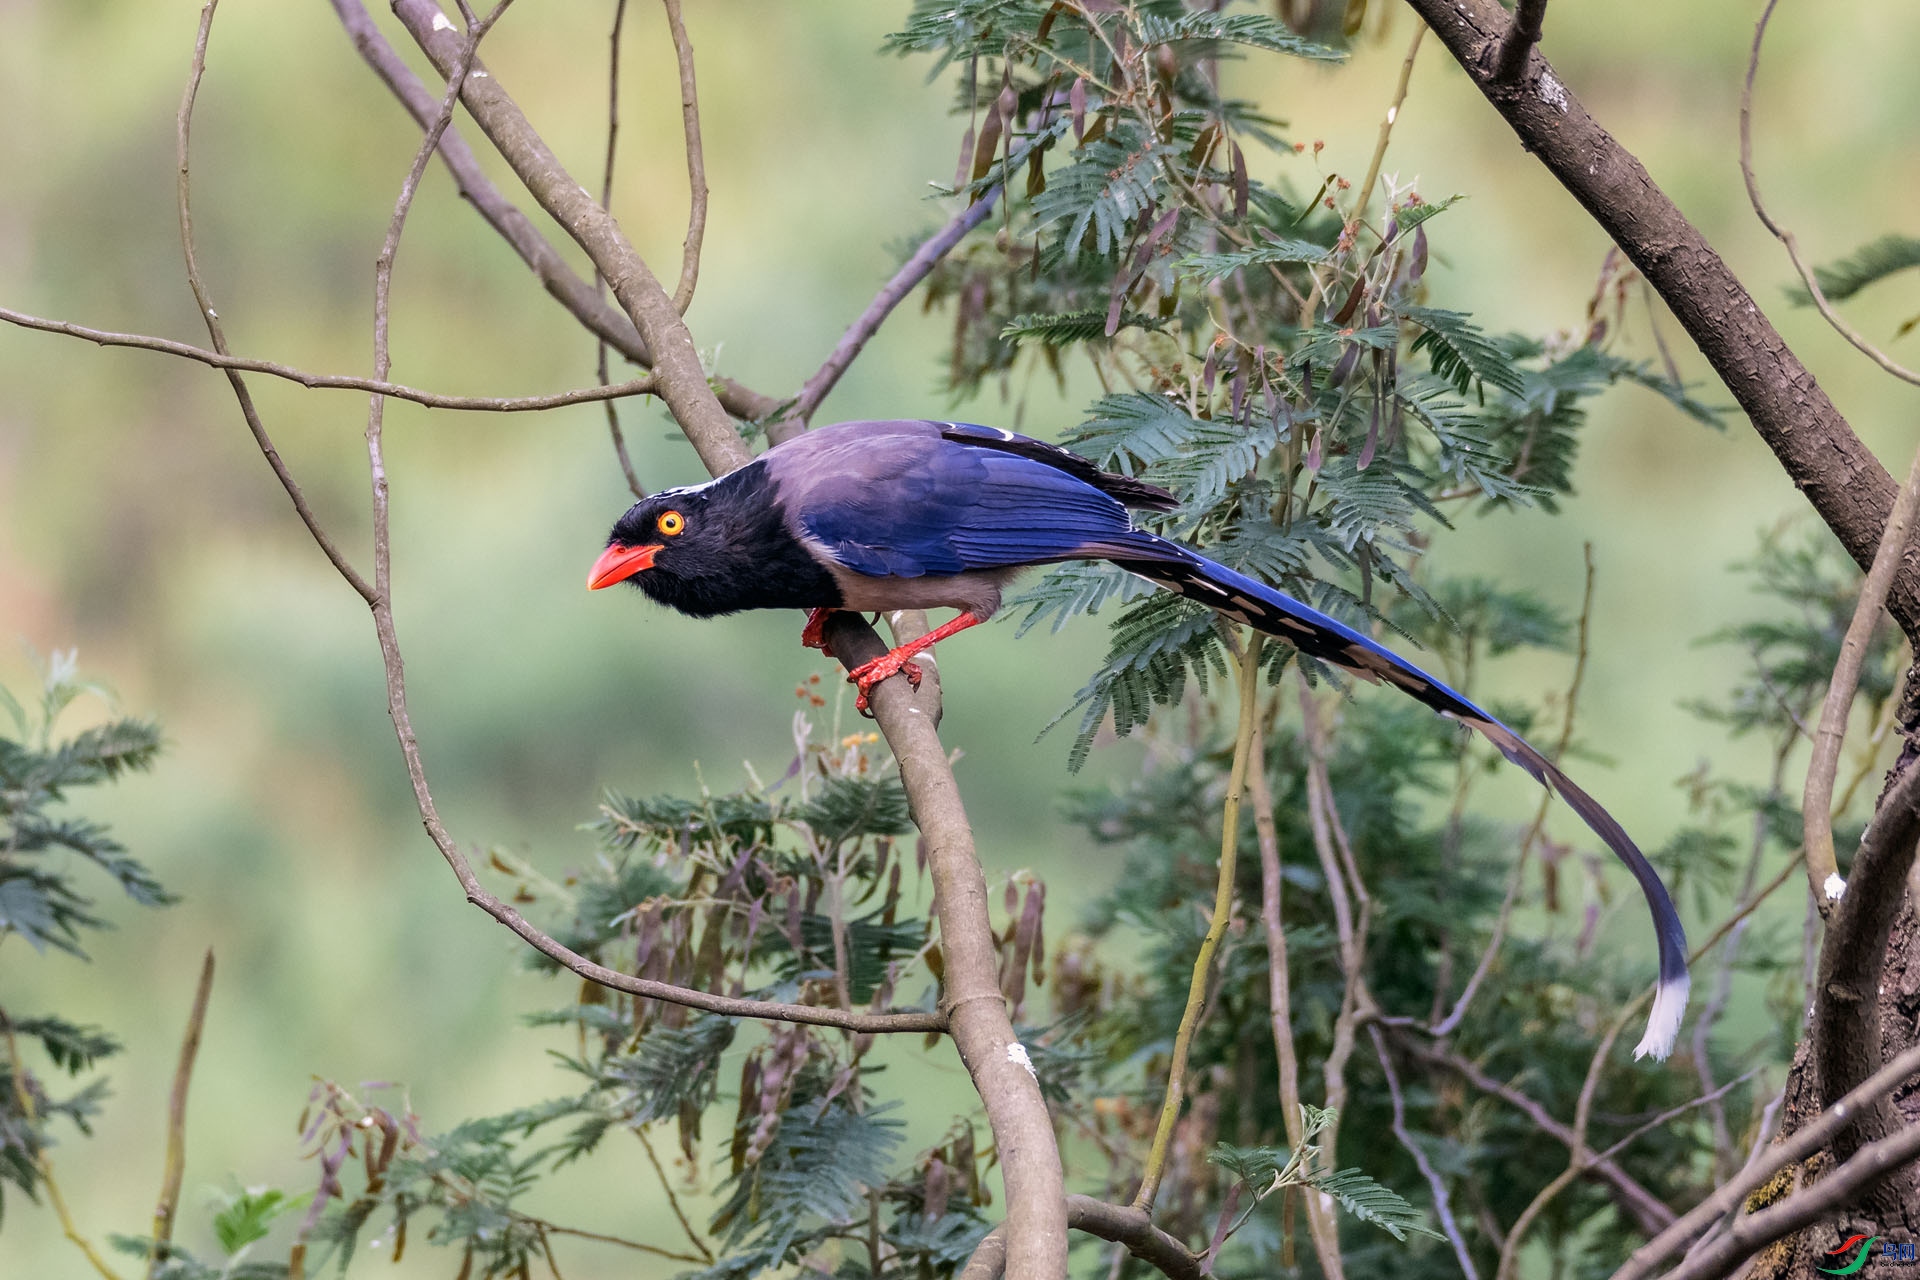 蓝桉树上的鸟红嘴蓝鹊图片